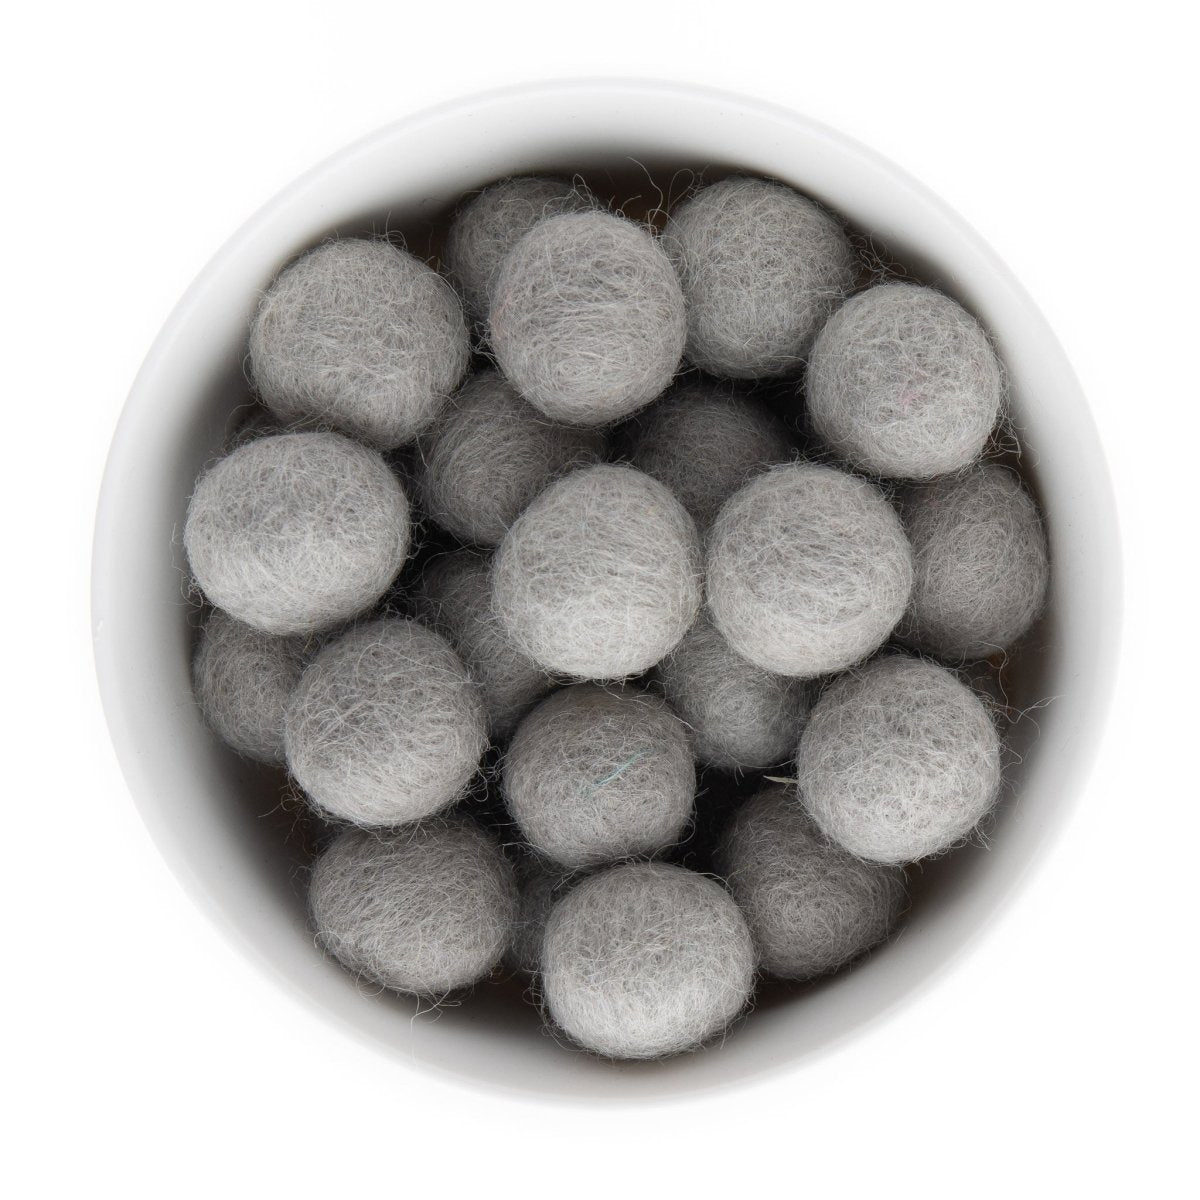 Felt & Crochet Beads Felt Balls 22mm Glacier Grey from Cara & Co Craft Supply